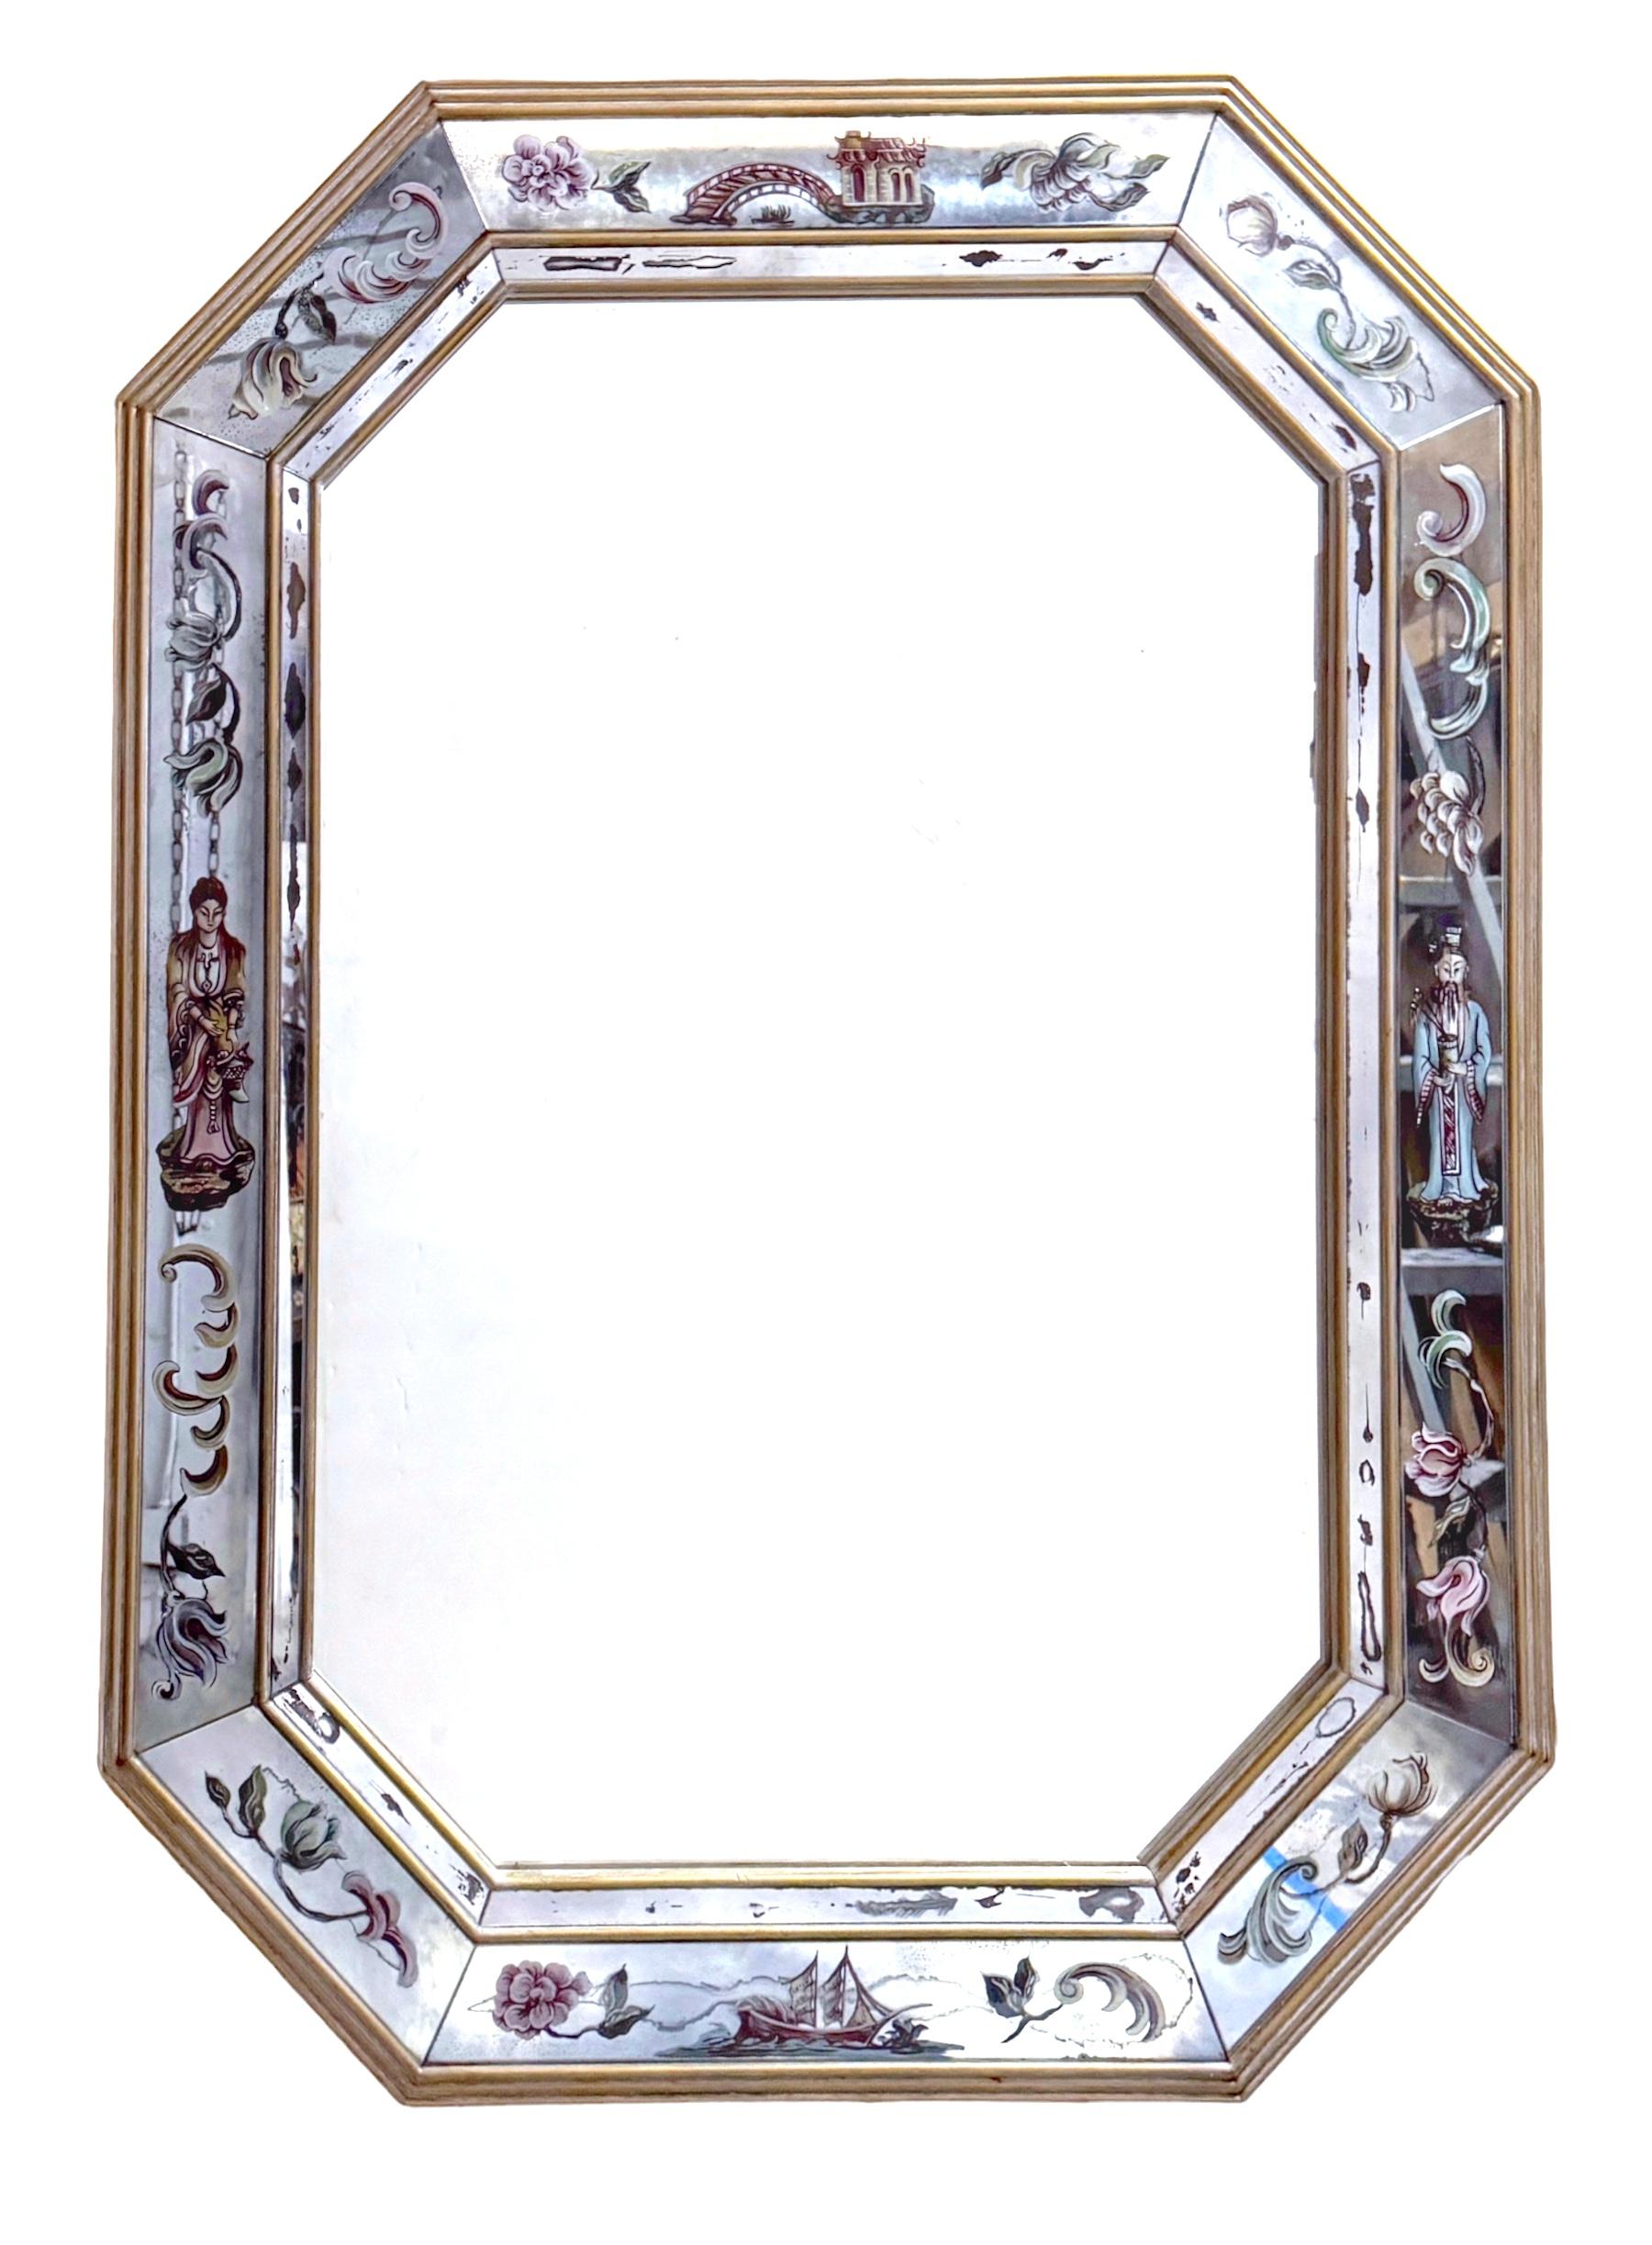 1950er Palm Beach Eglomise Chinoiserie-Spiegel

Dieser exquisite Palm Beach Eglomise Chinoiserie-Spiegel ist ein Zeugnis des italienischen Hollywood Regency-Designs, das für den amerikanischen Markt maßgeschneidert wurde. Seine verführerische